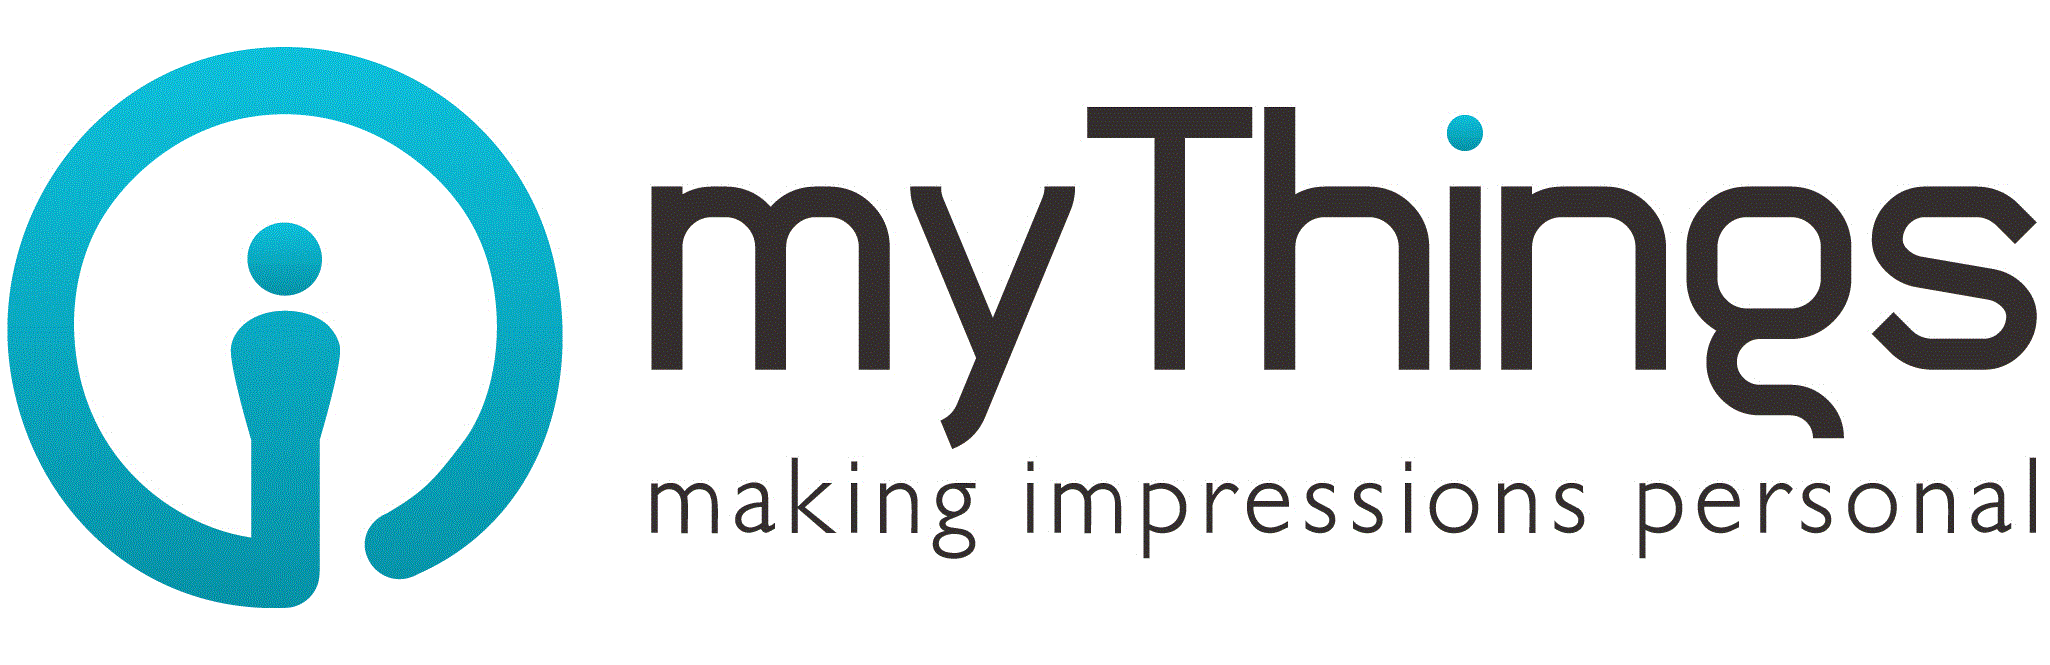 mythings-logo